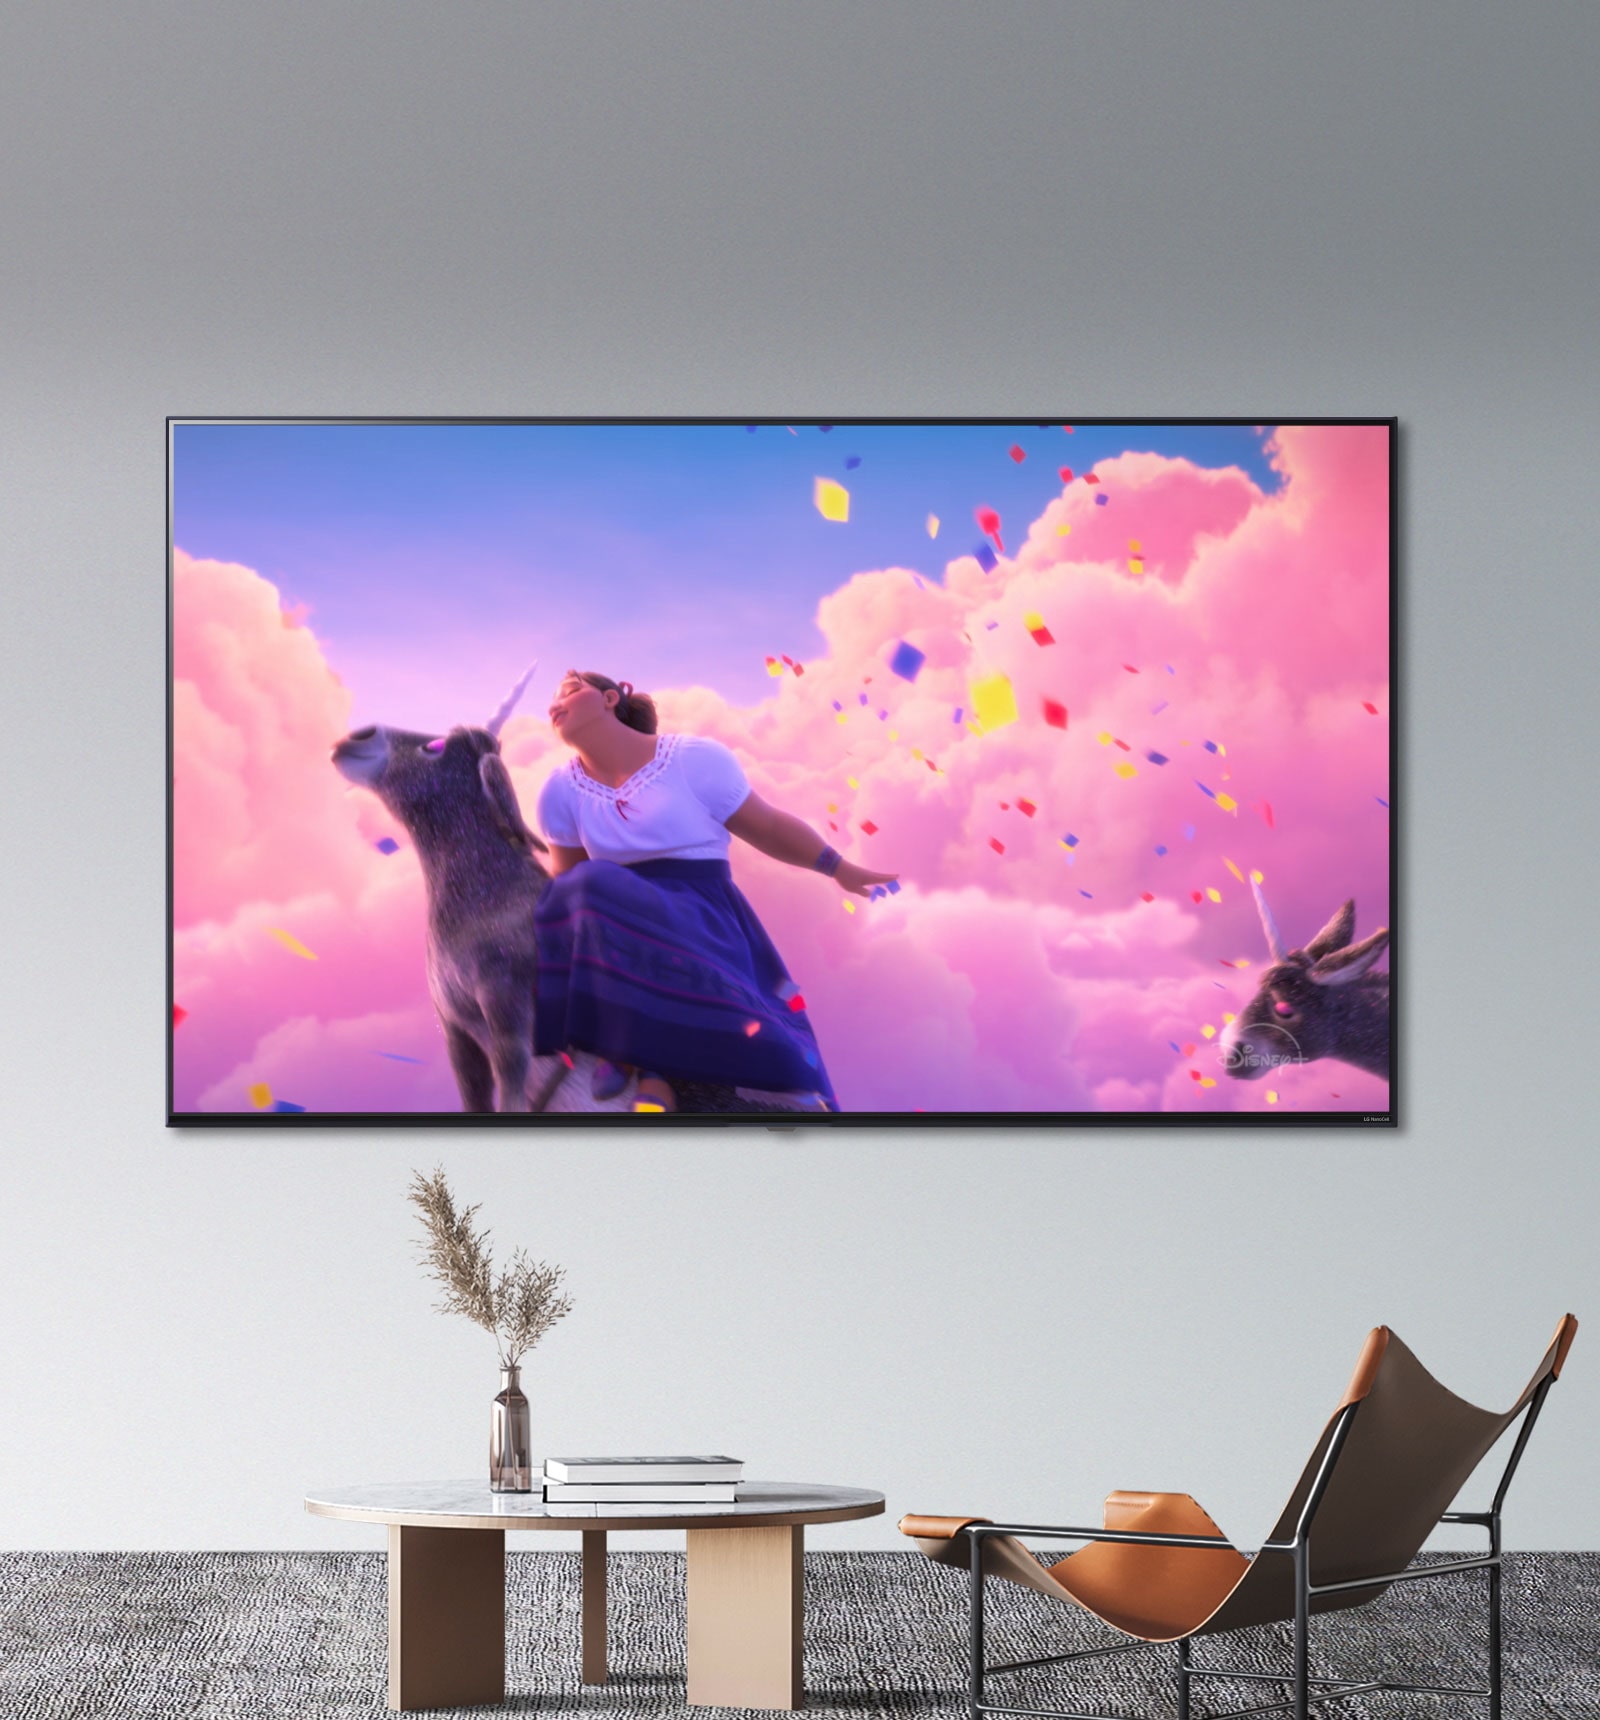 Des scènes du film d'animation "Encanto" de Disney présentent des couleurs vives et éclatantes sur un téléviseur LG NanoCell.